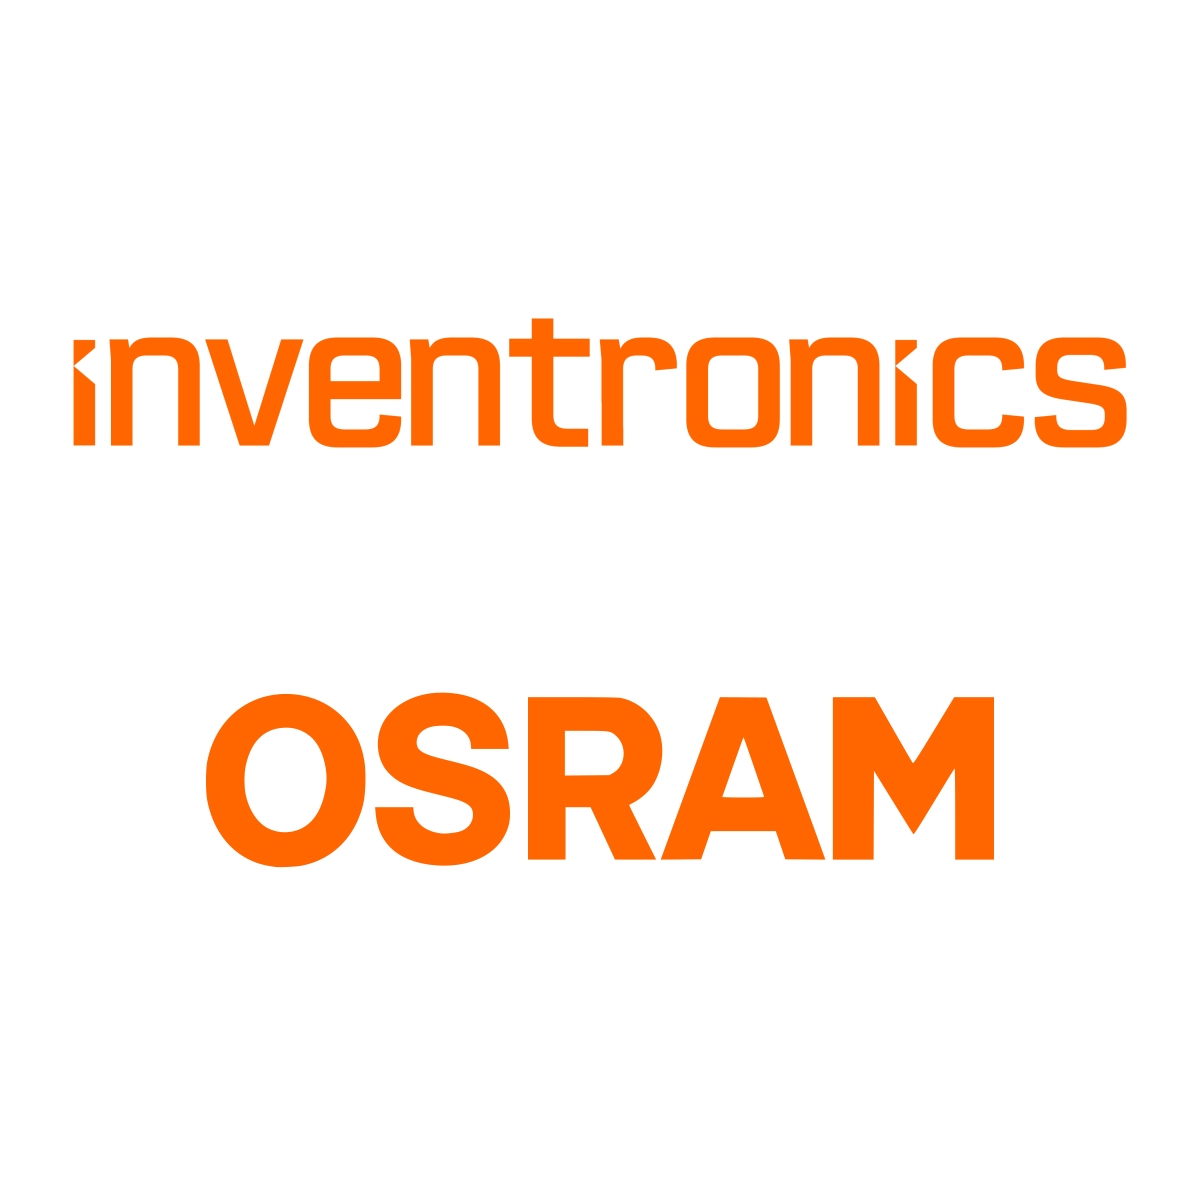 Inventronics Osram